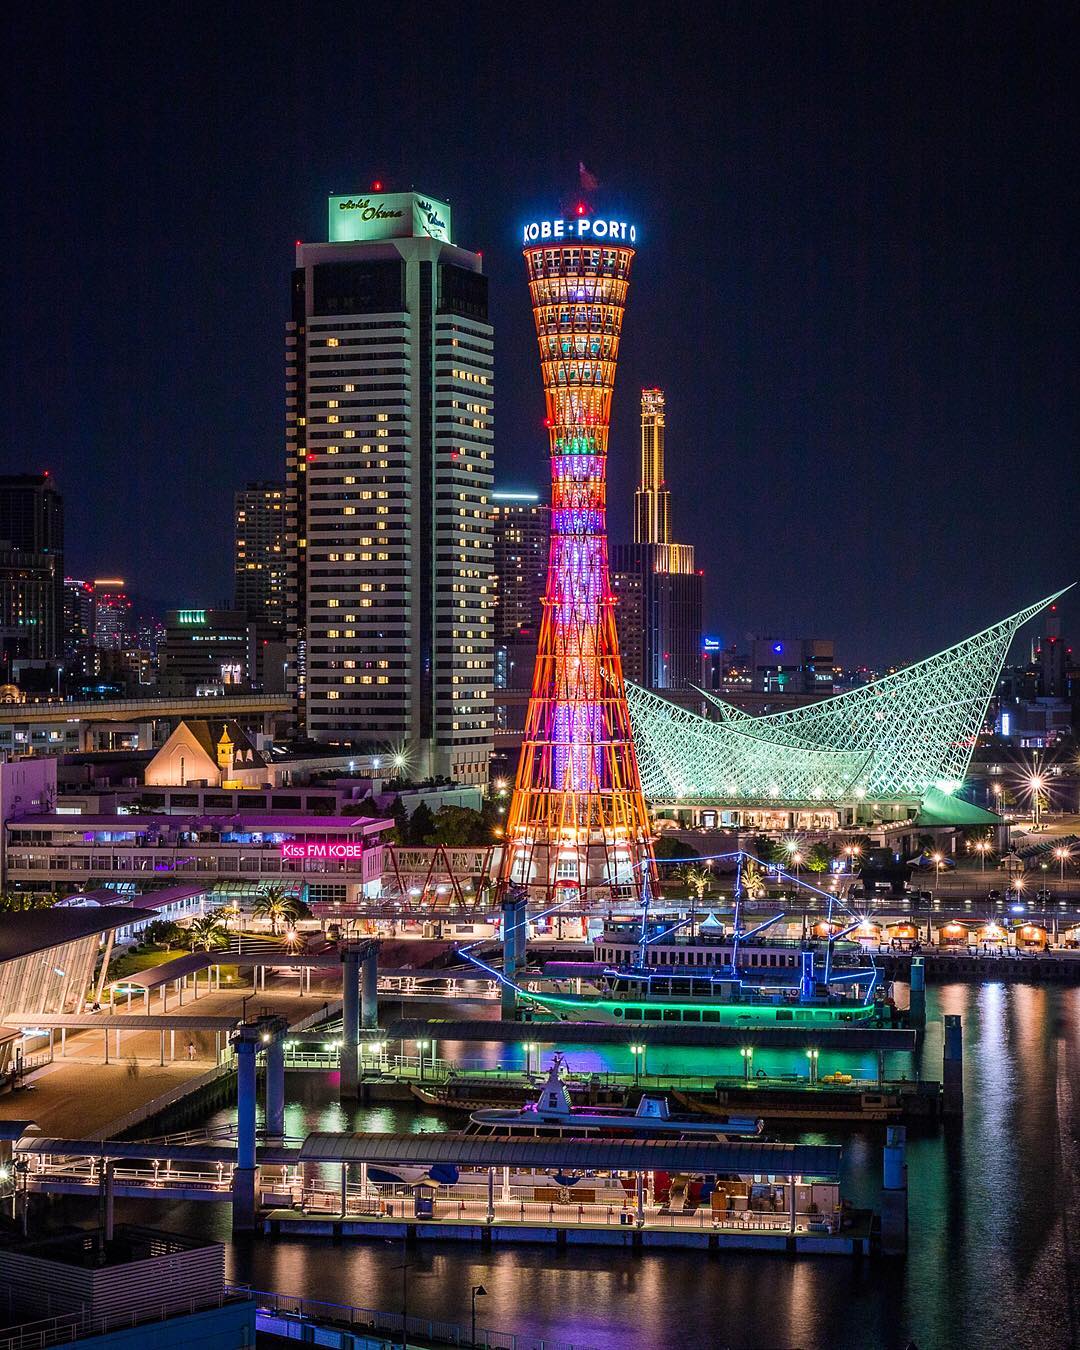 神戶港塔 Kobe Port Tower